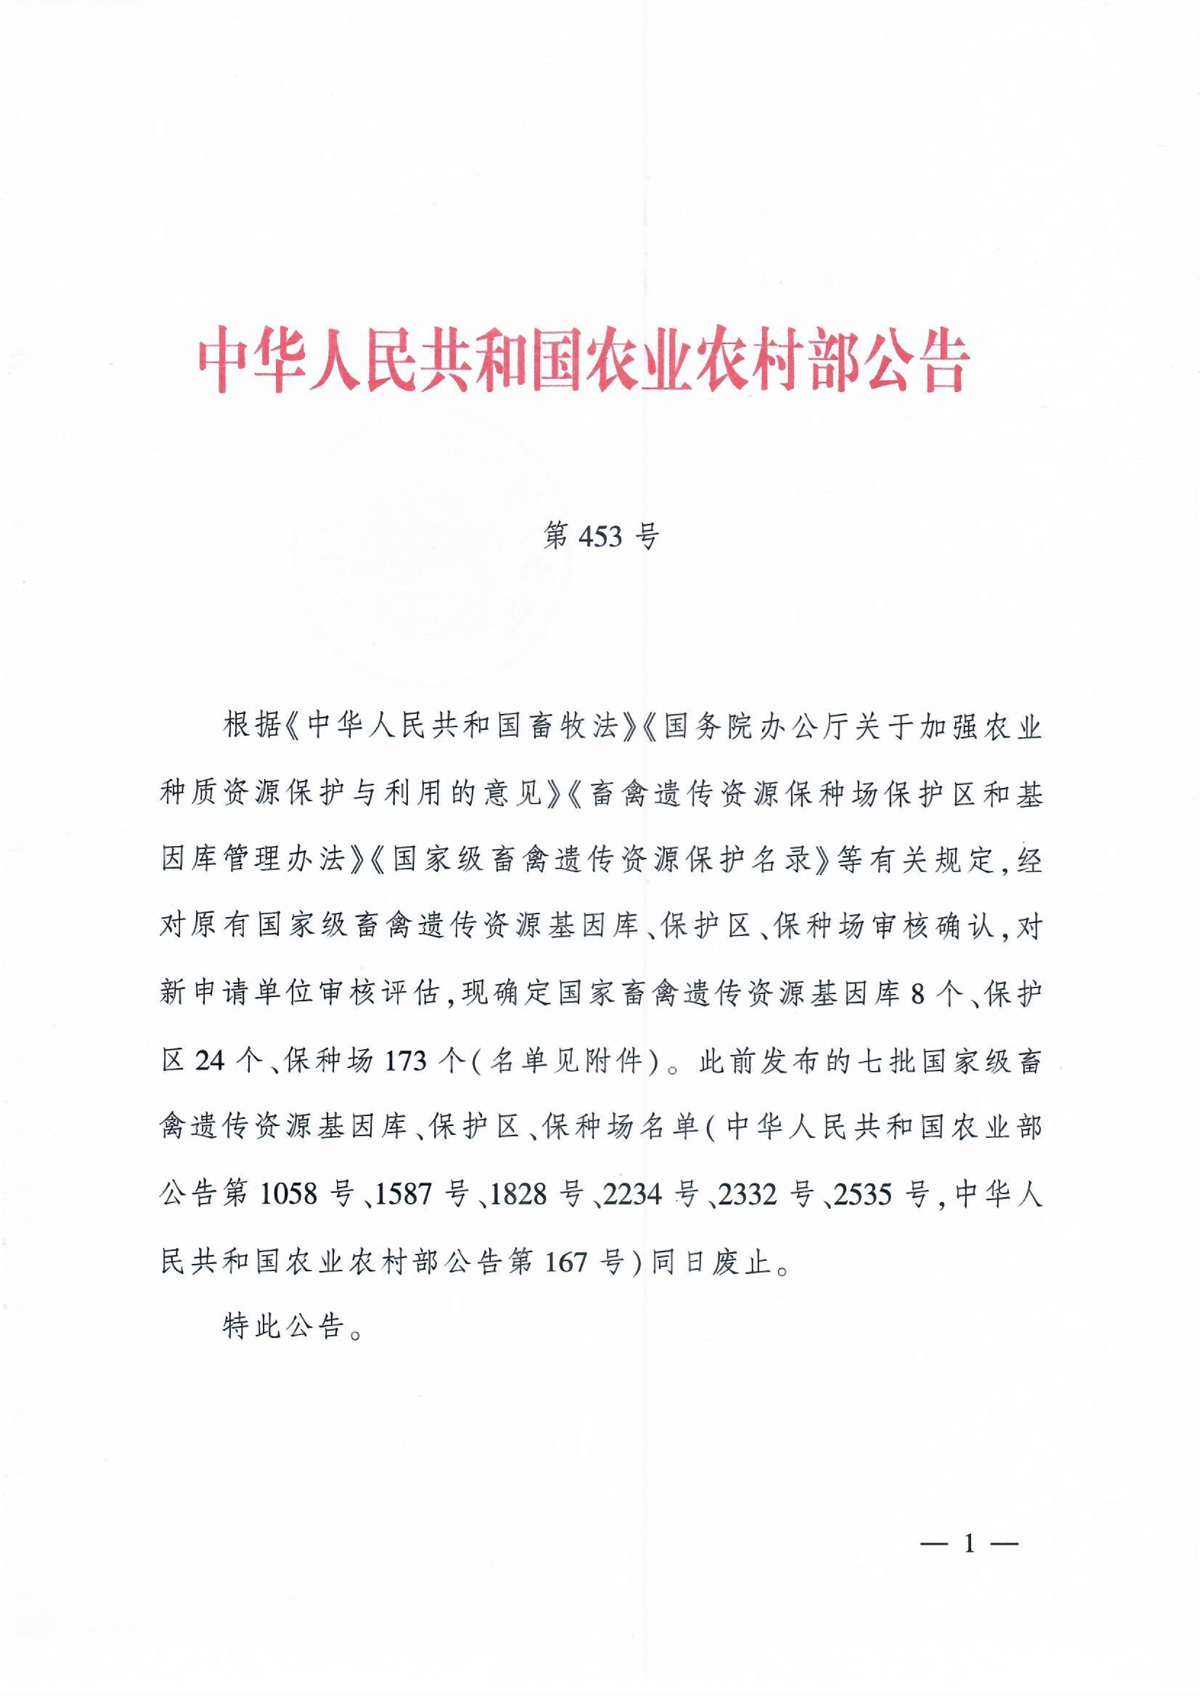 中华人民共和国农业农村部公告-第453号(国家畜禽遗传资源基因库、保护区、保种场）-1.jpg